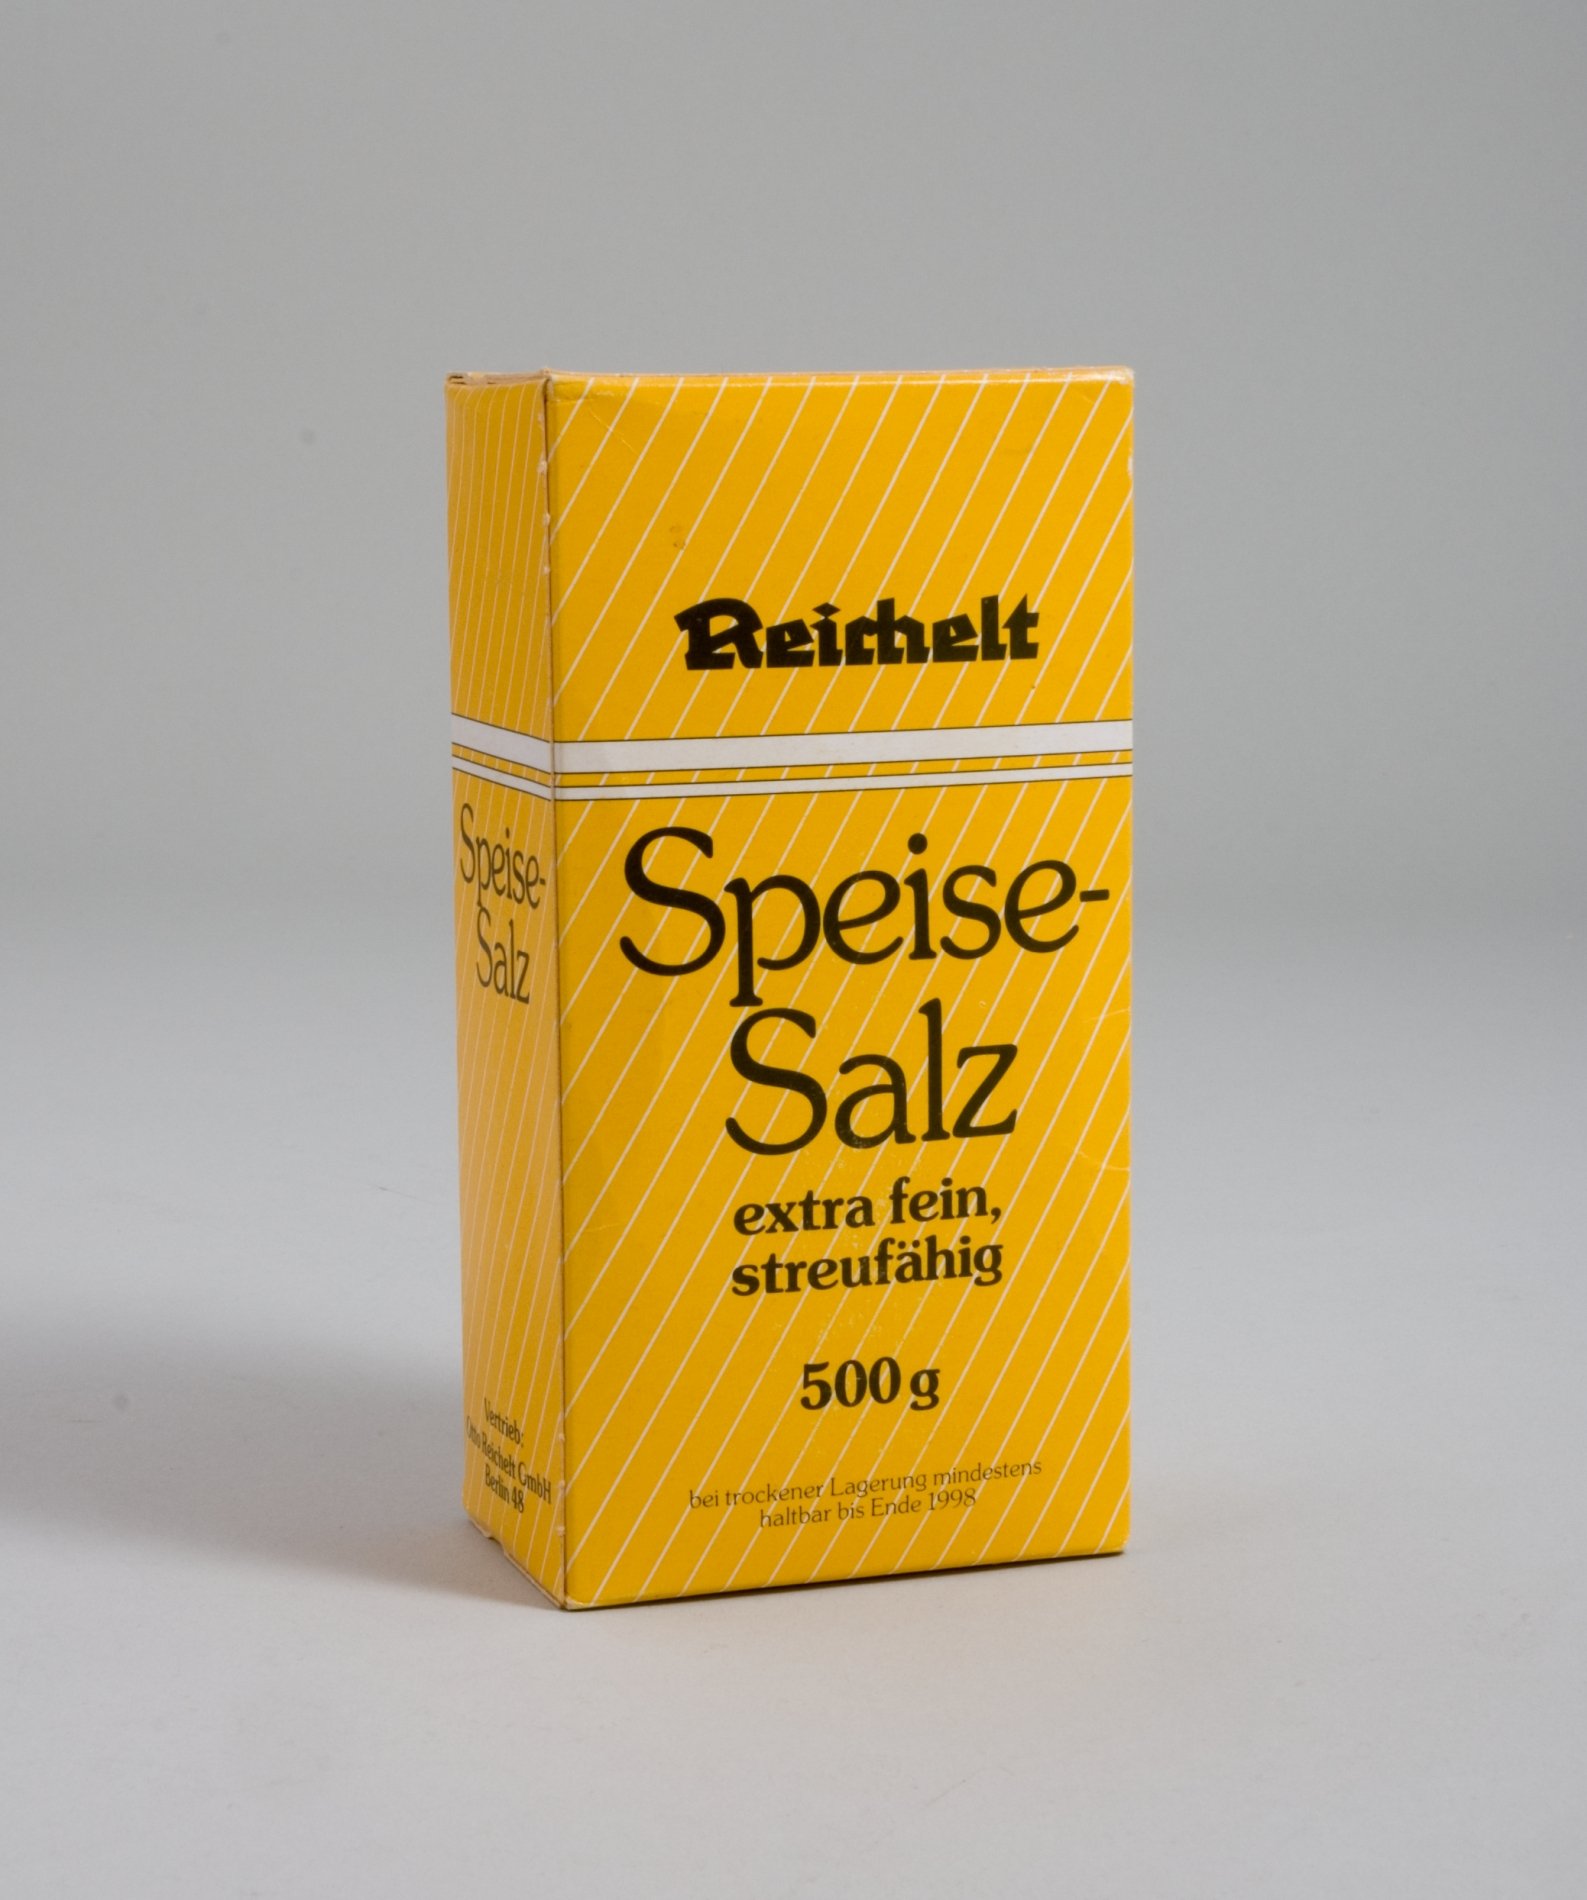 Verpackung " Speise-Salz " der Firma "Reichelt" (Stiftung Domäne Dahlem - Landgut und Museum, Weiternutzung nur mit Genehmigung des Museums CC BY-NC-SA)